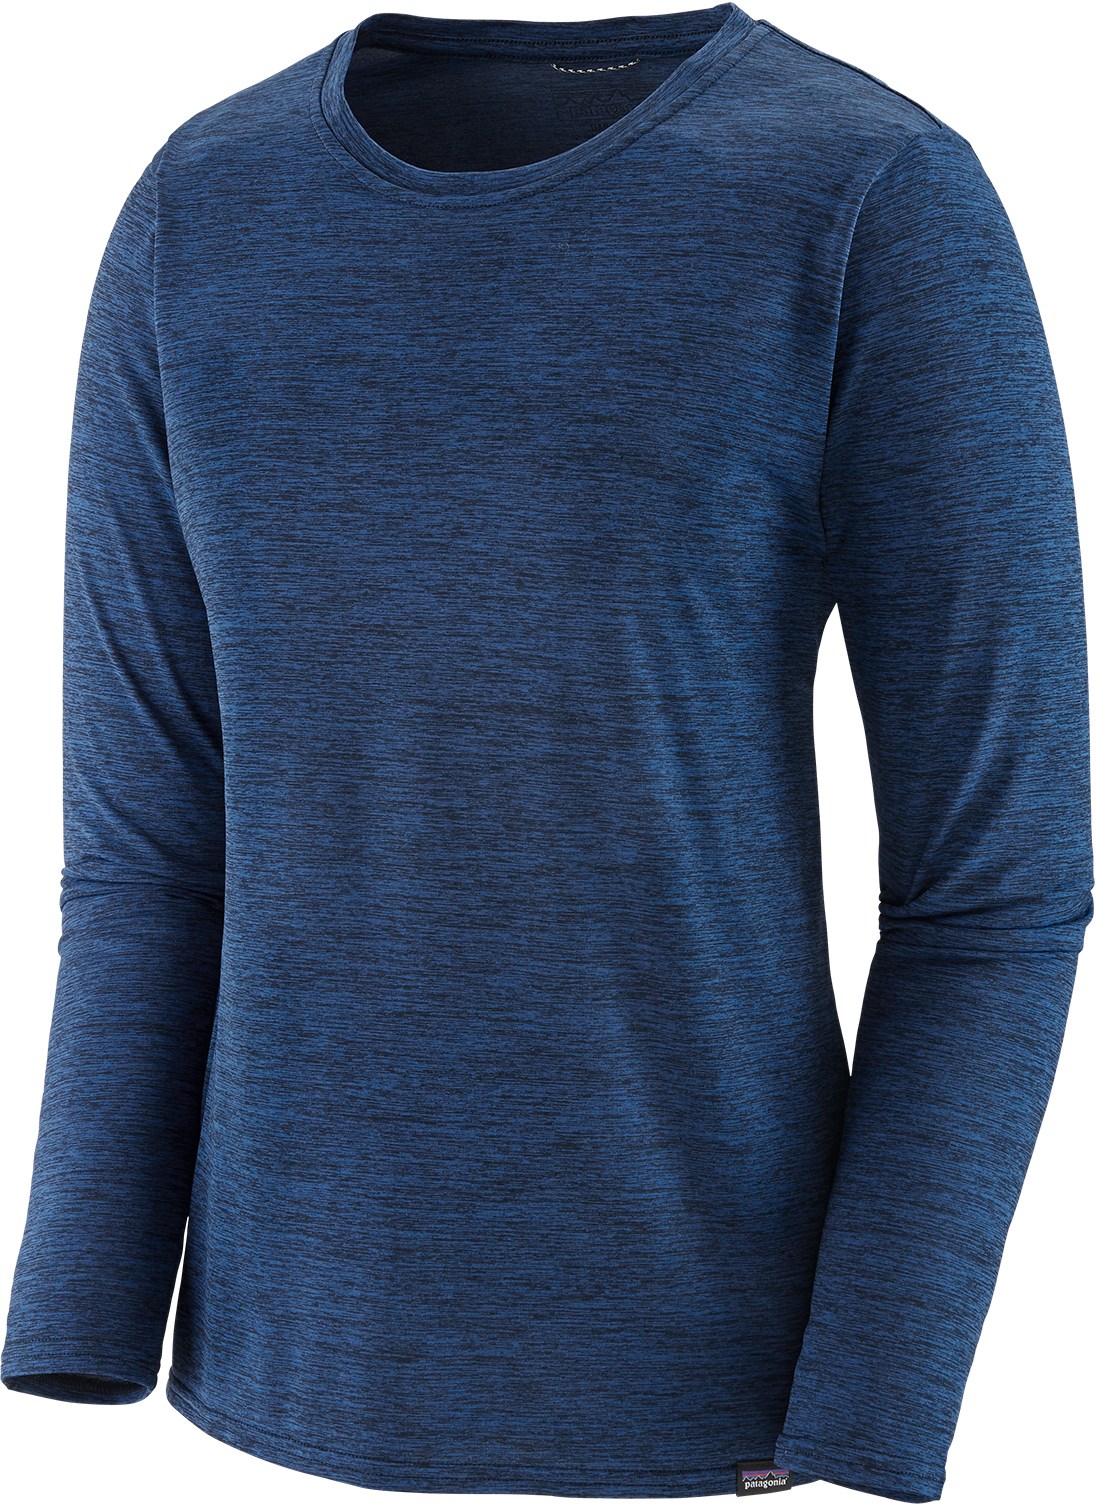 Повседневная рубашка Capilene Cool с длинными рукавами — женская Patagonia, синий повседневная рубашка с длинными рукавами capilene cool – мужская patagonia белый